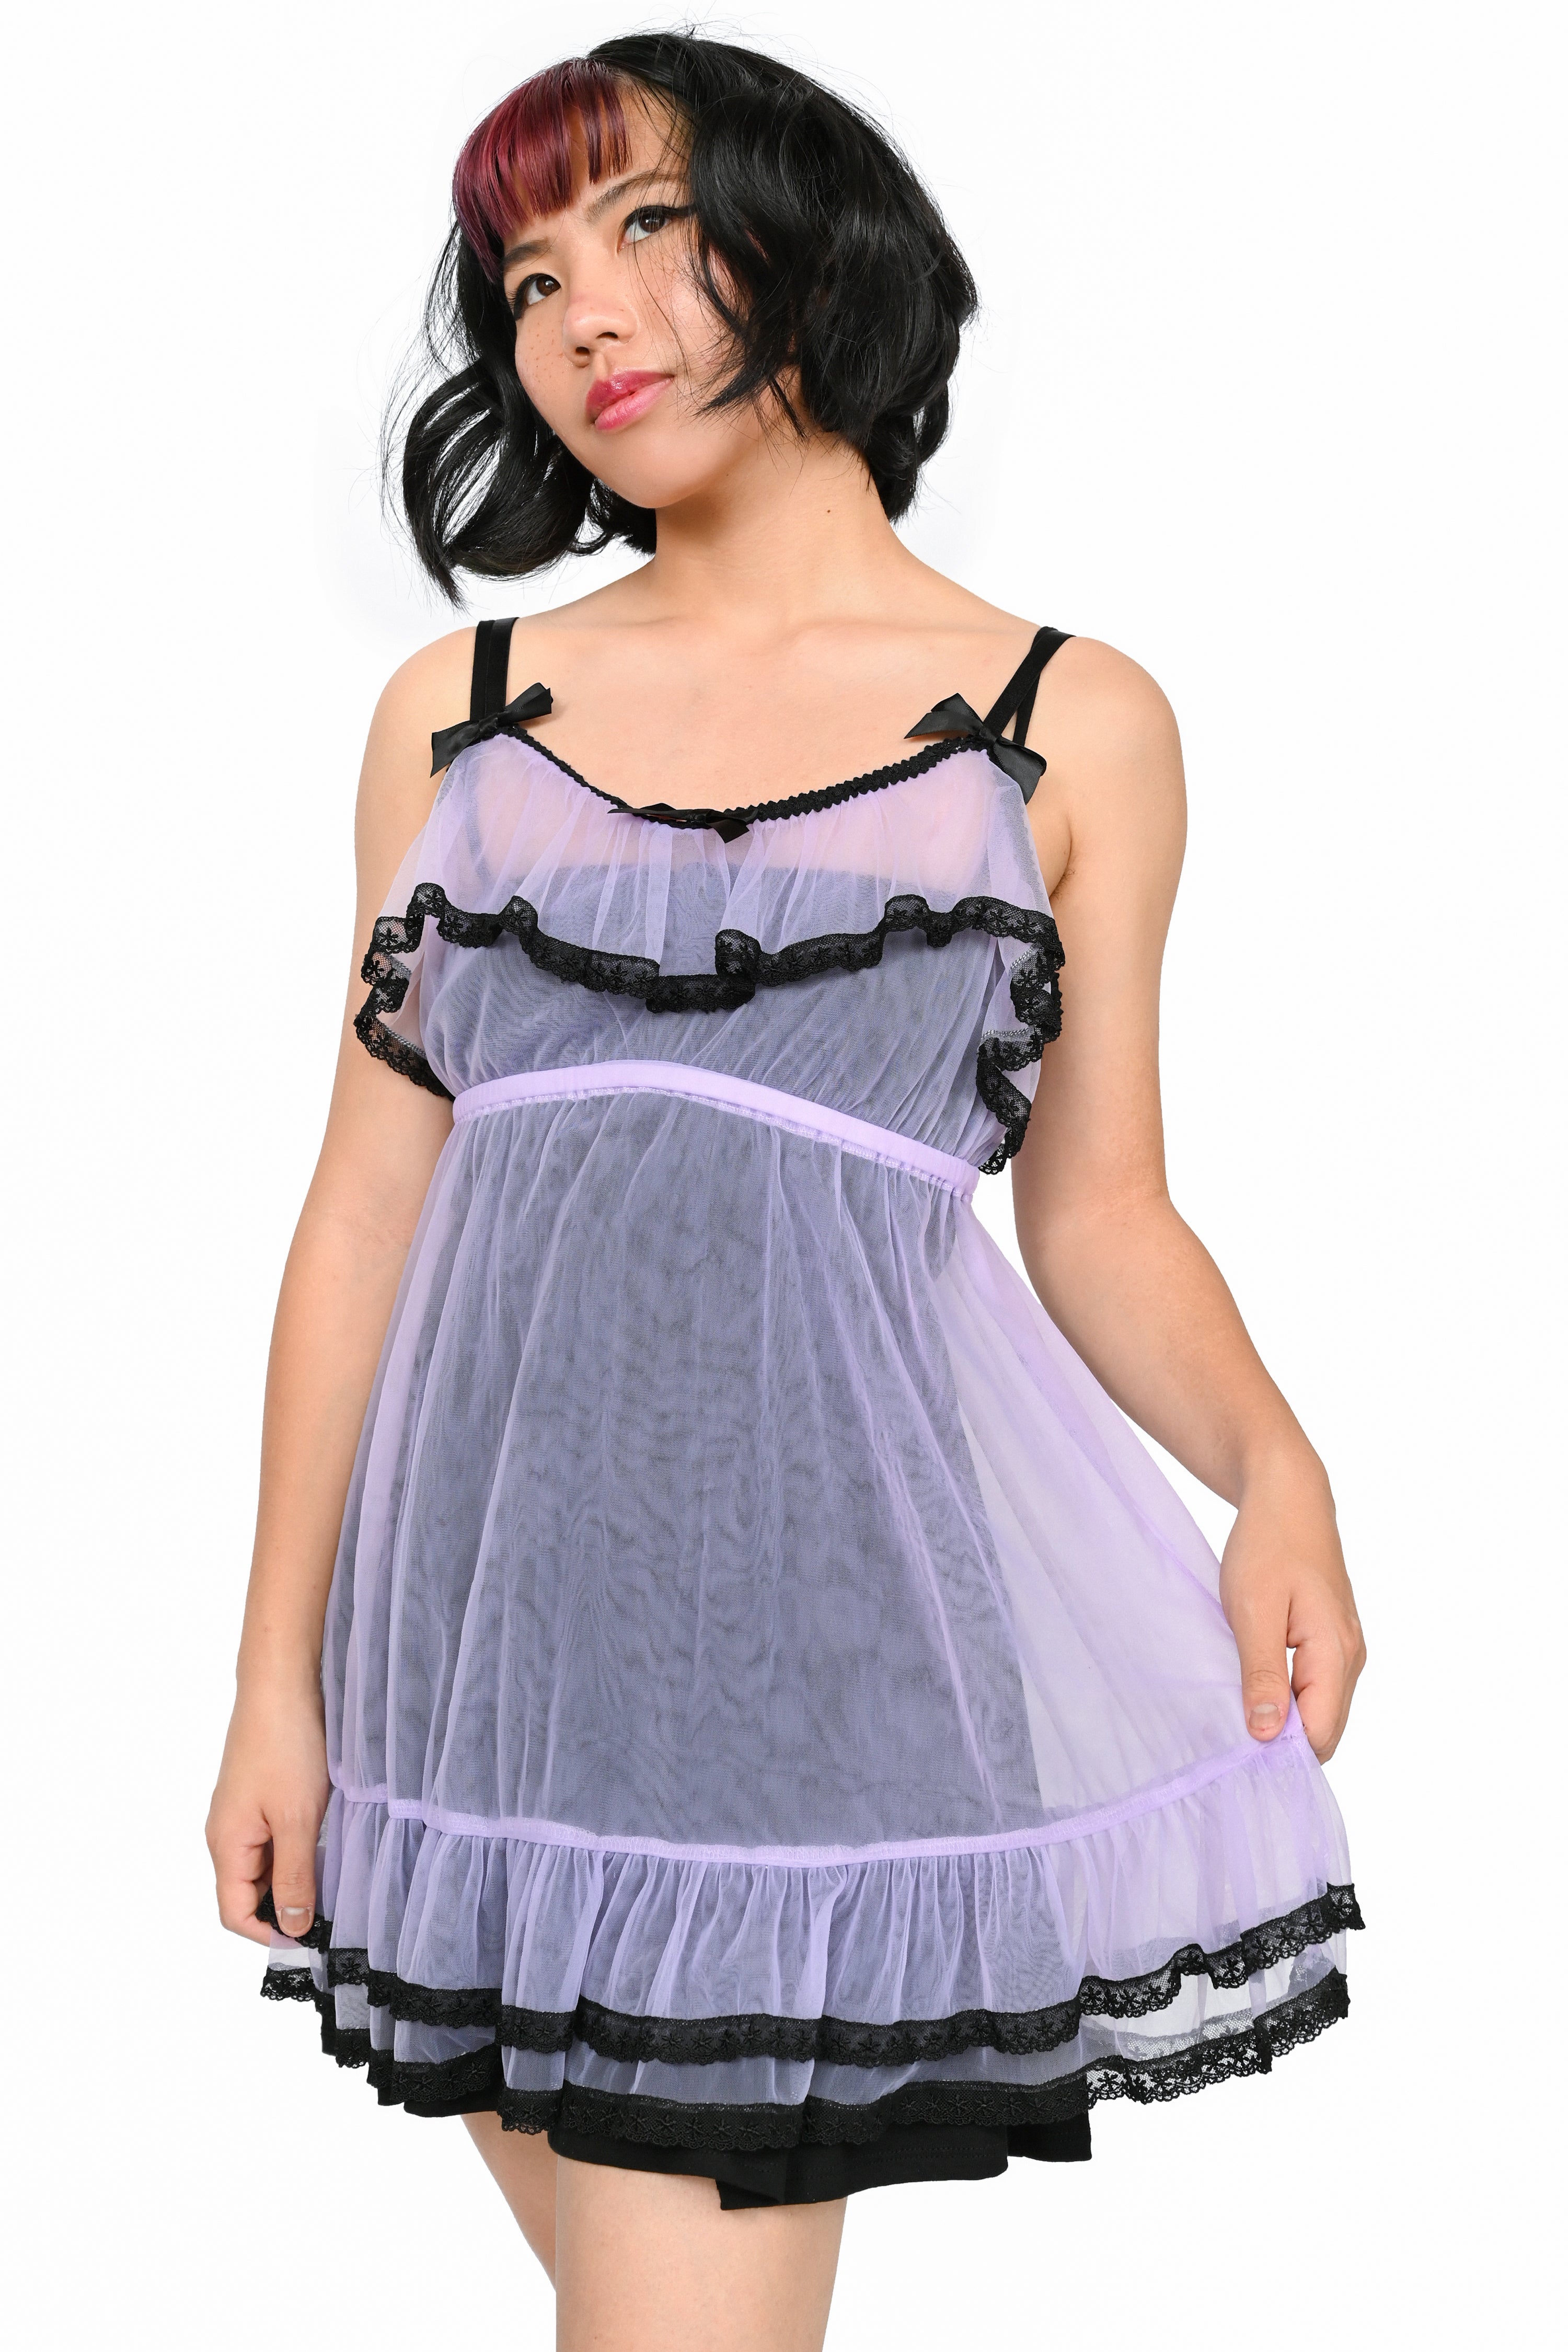 Women's Lingerie Lace Babydoll V-Neck Plus Size Sleepwear Nightwear -  Walmart.com